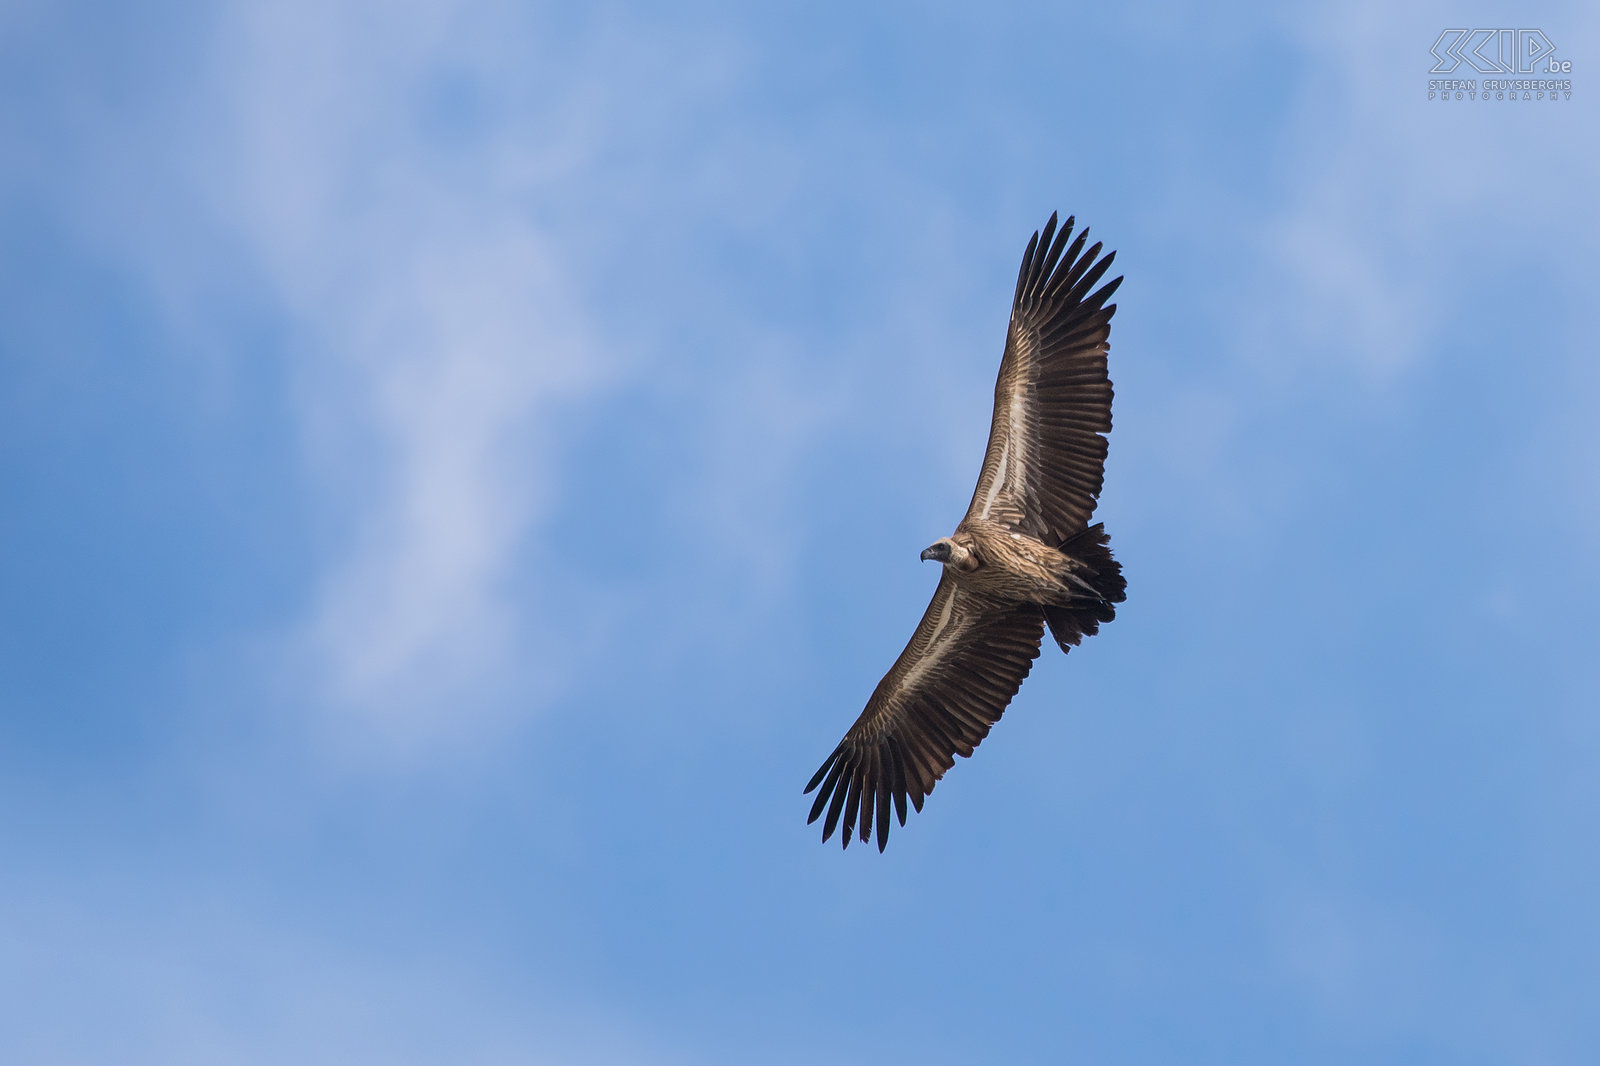 Lower Zambezi - Witruggier Een witruggier (White-backed vulture, Gyps africanus) boven de Zambezi rivier. Een volwassen witruggier is ongeveer 94cm lang en kan een vleugelspanwijdte hebben van 218cm. Stefan Cruysberghs